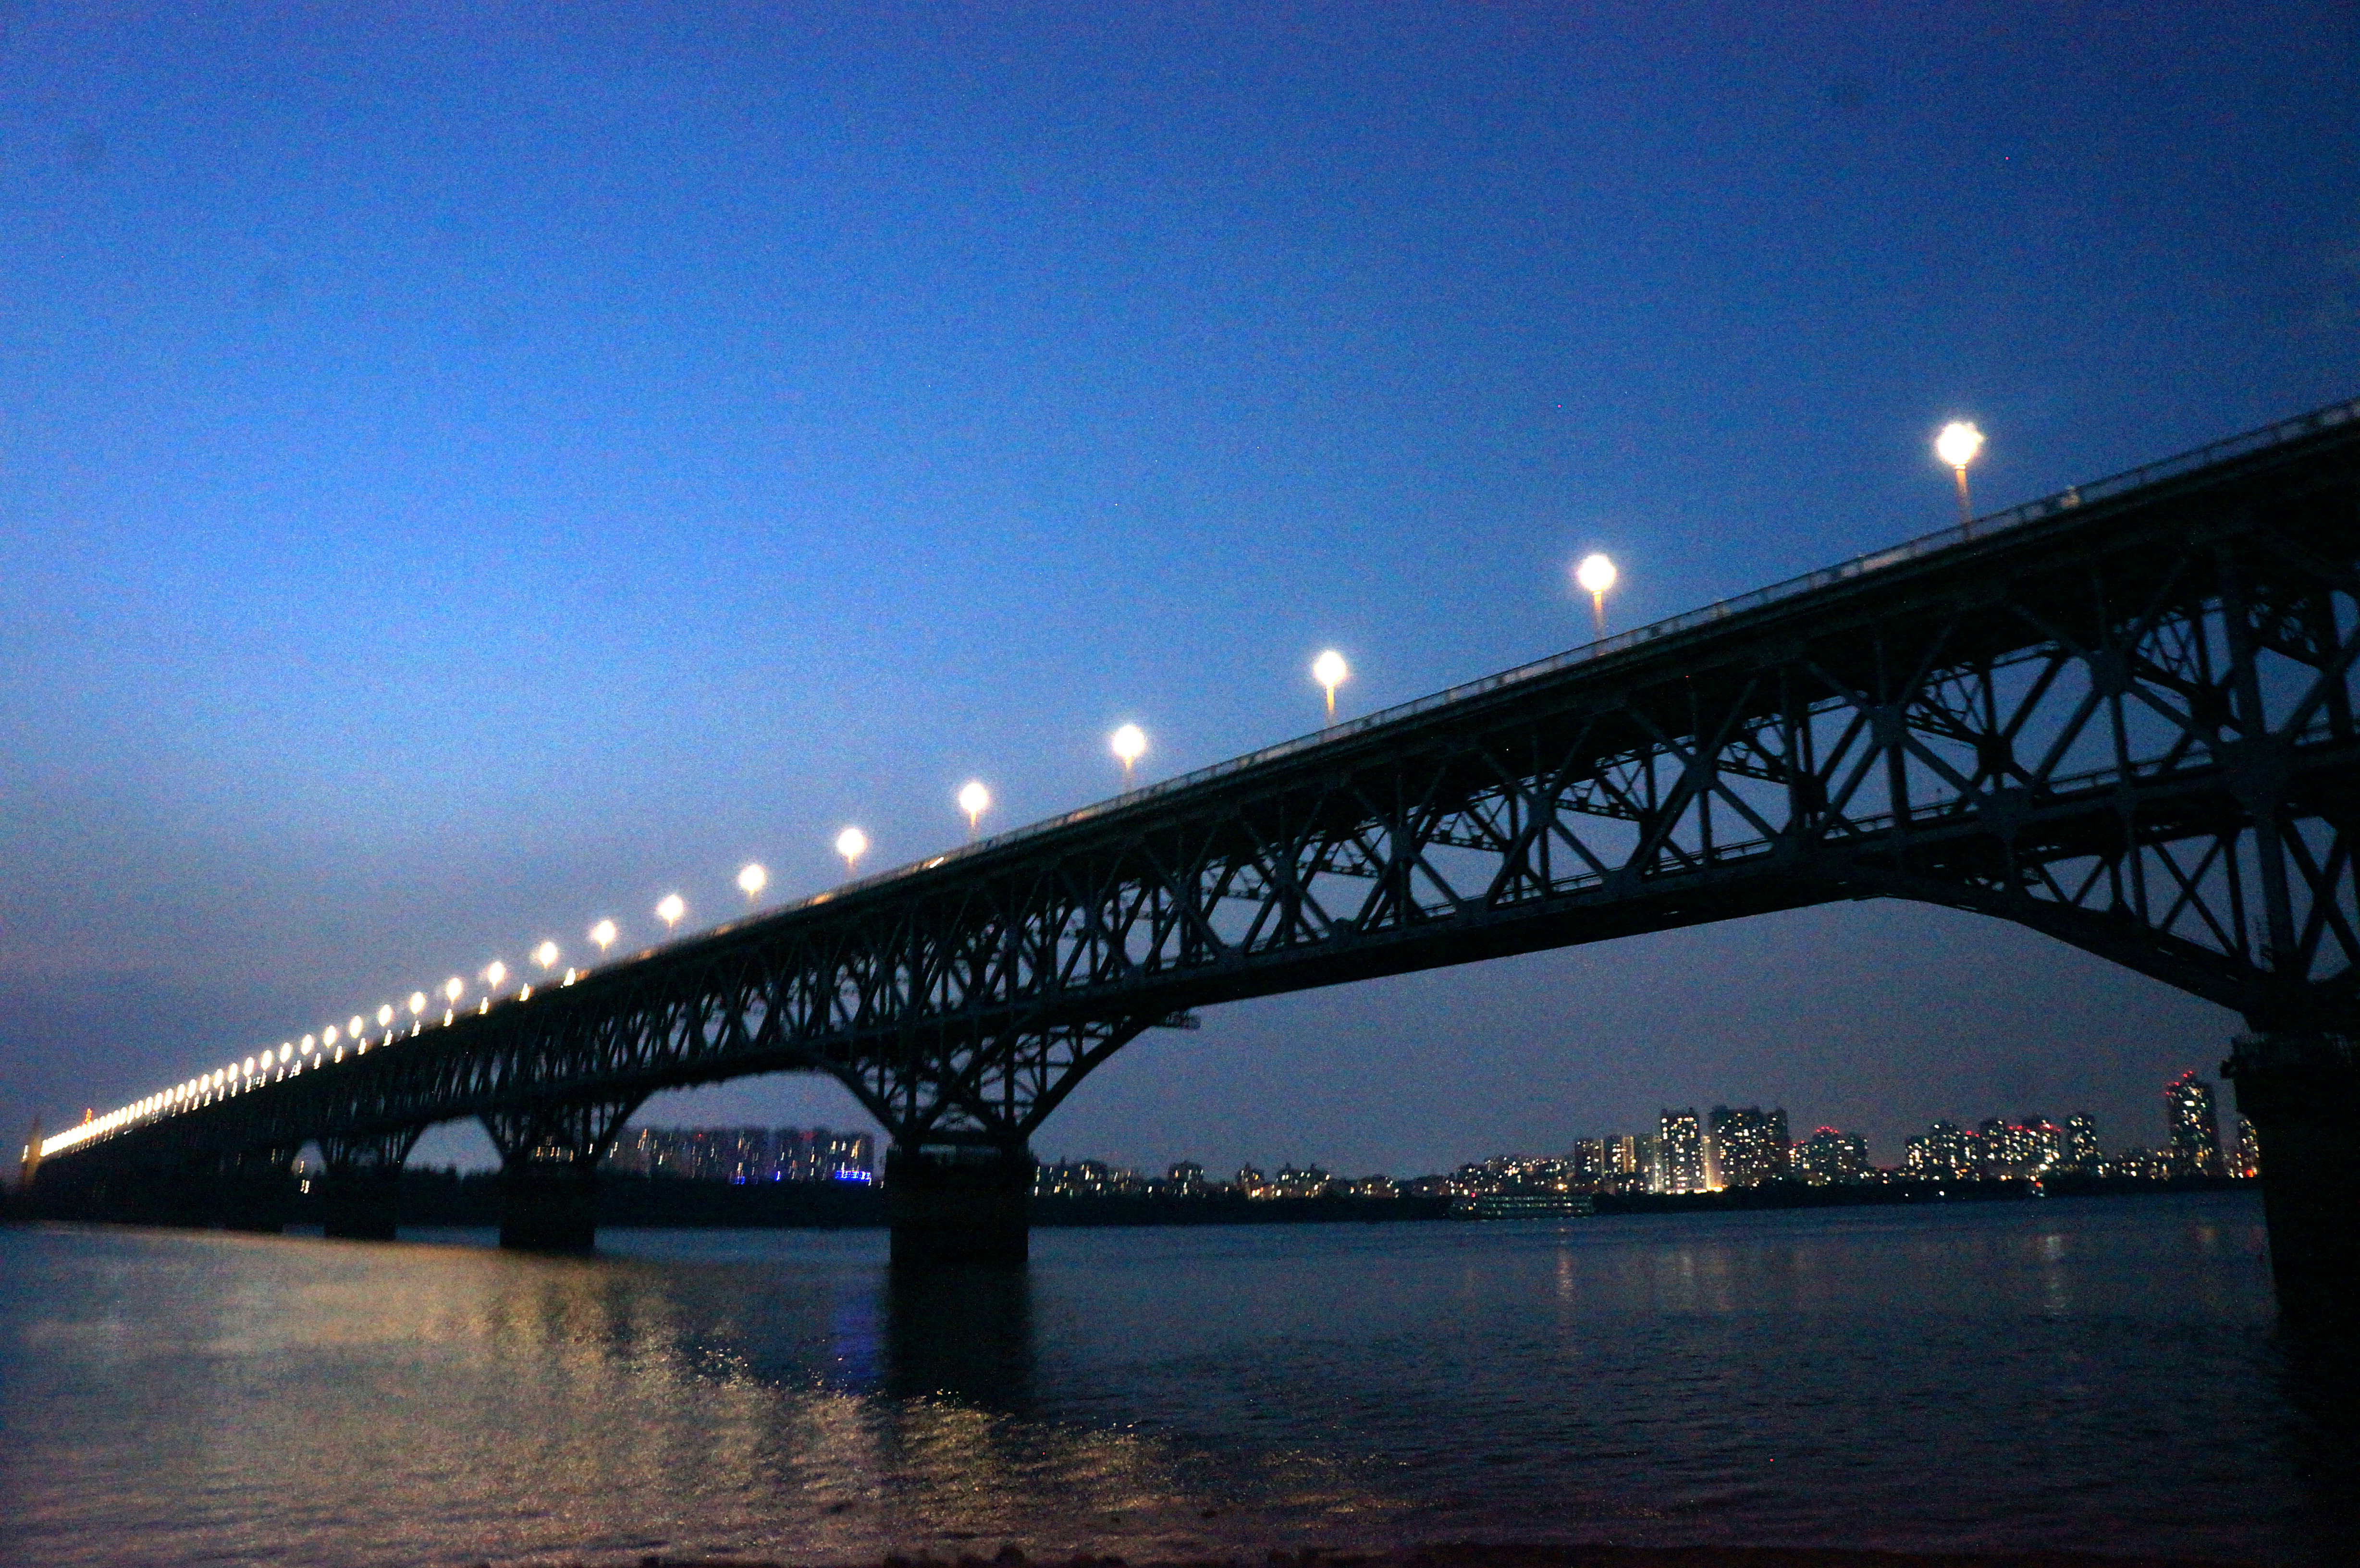 夜色中南京长江大桥显得更加壮美